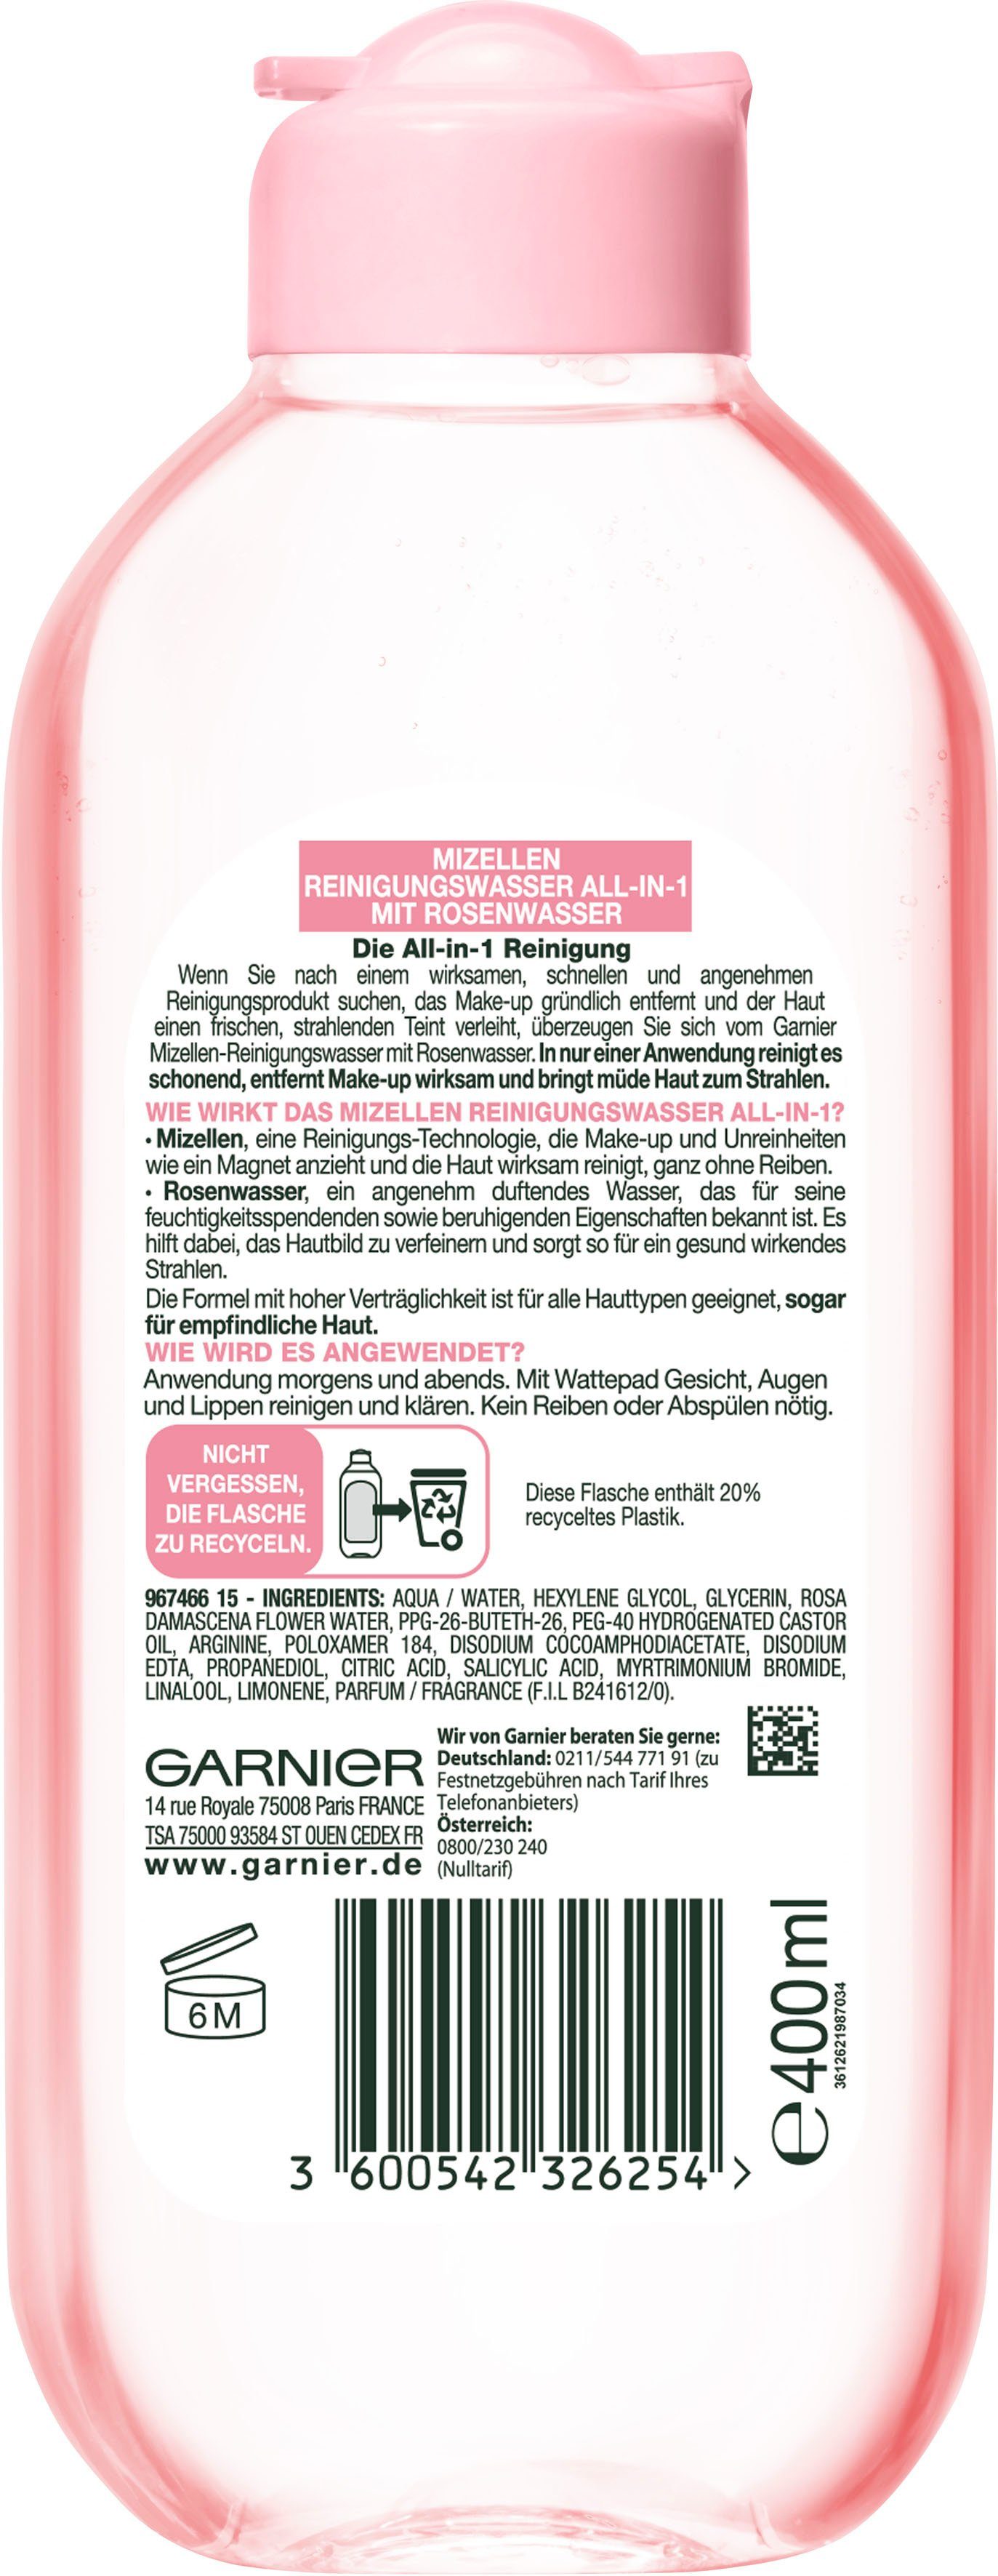 GARNIER Gesichtswasser Mizellen Reinigungswasser mit Rosenwasser All-in-1